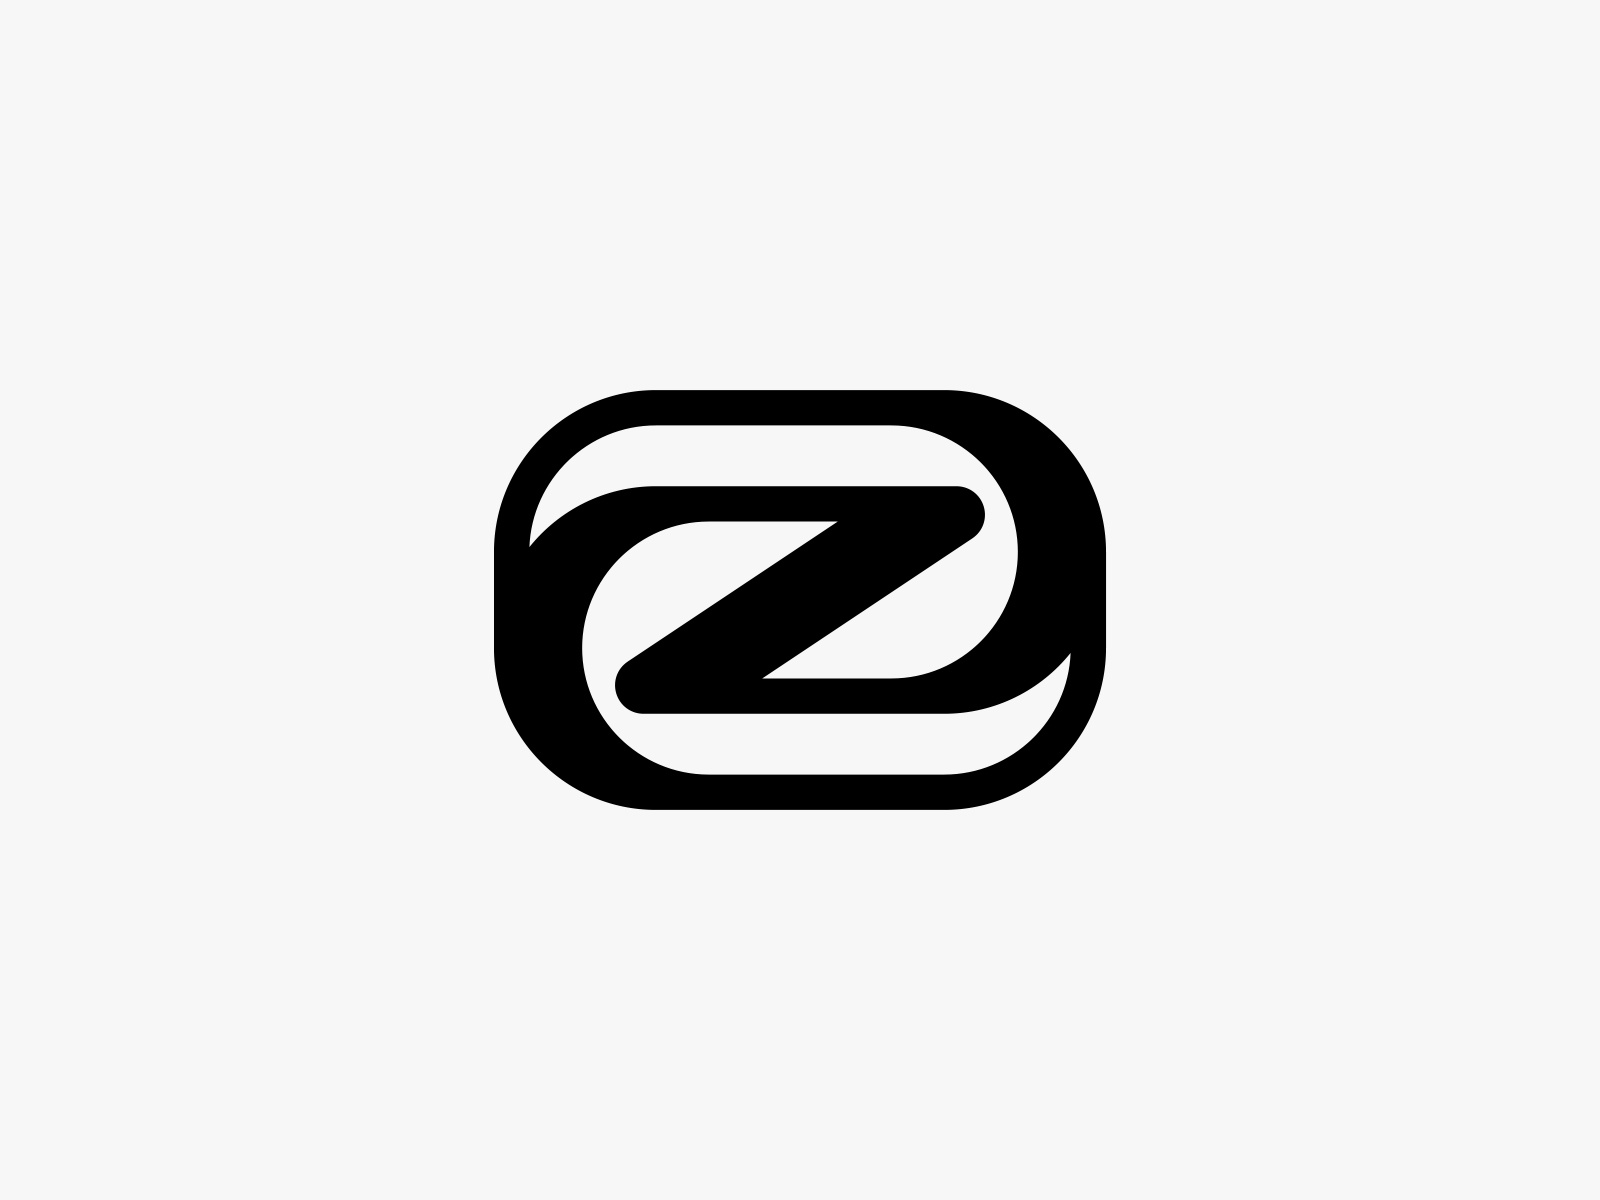 Unused Z Lettermark by Lucas Fields on Dribbble